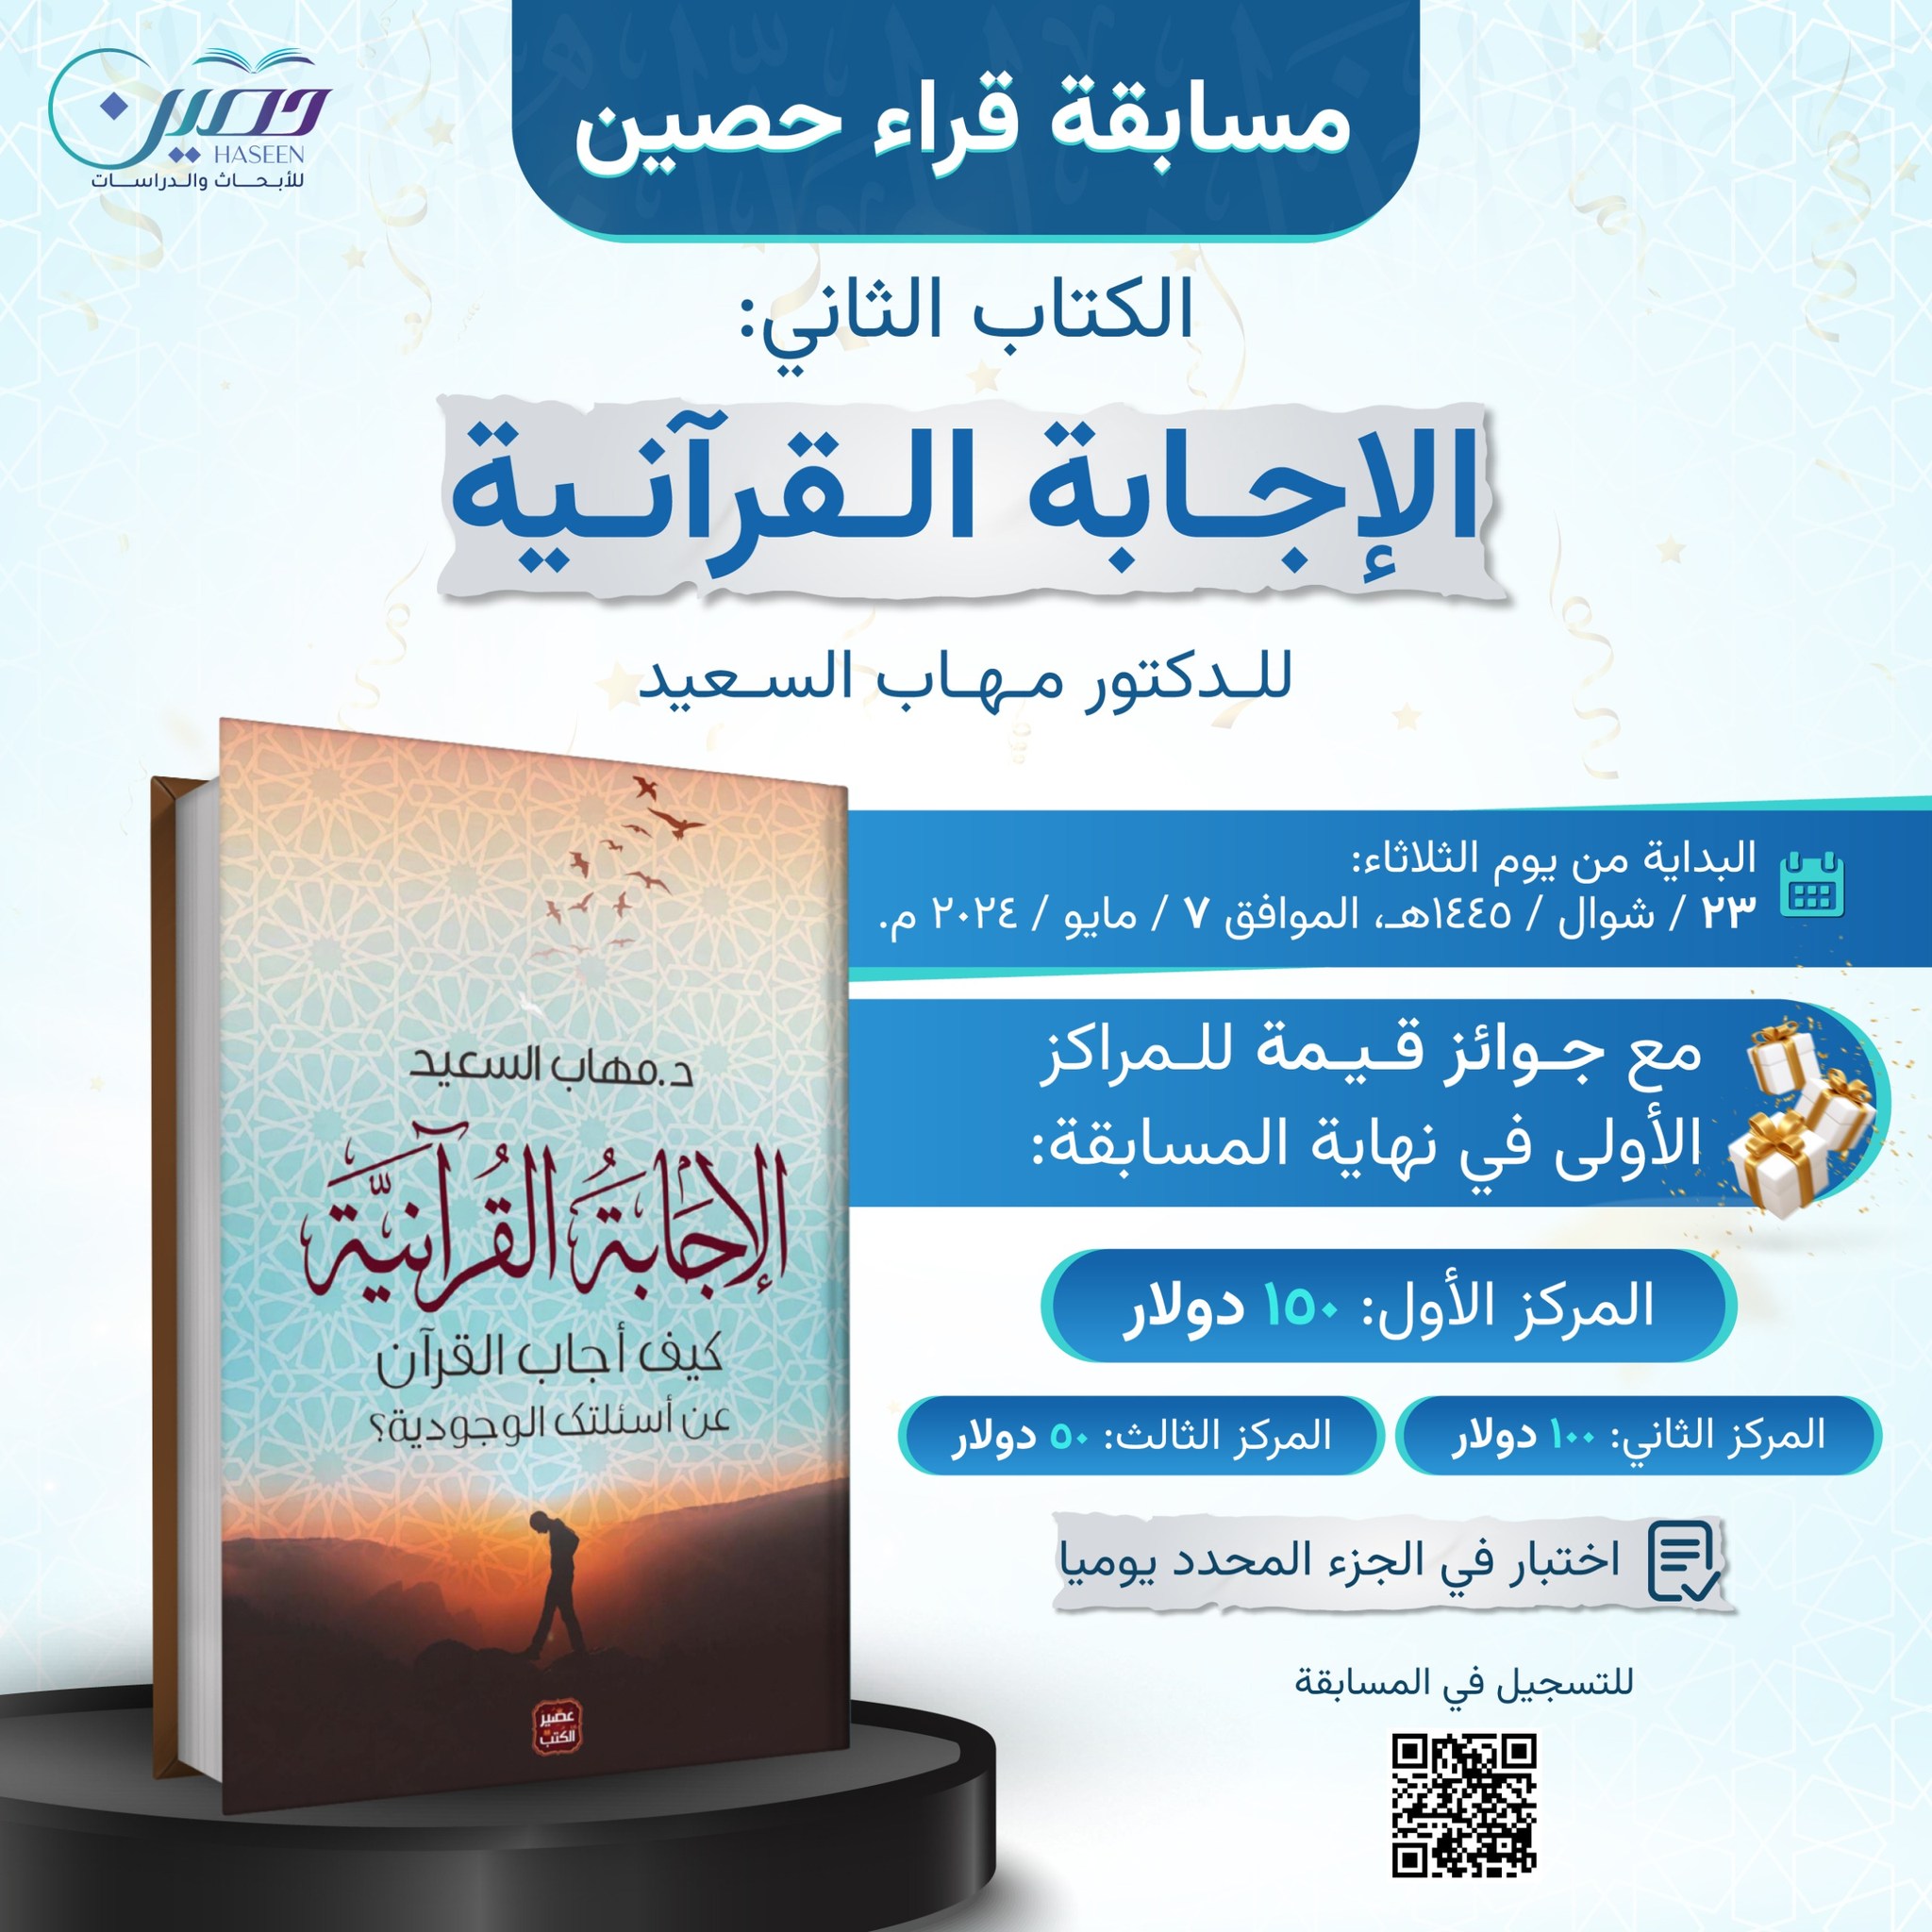 مسابقة "قراء حصين".. كتاب "الإجابة القرآنية"  للدكتور مهاب السعيد